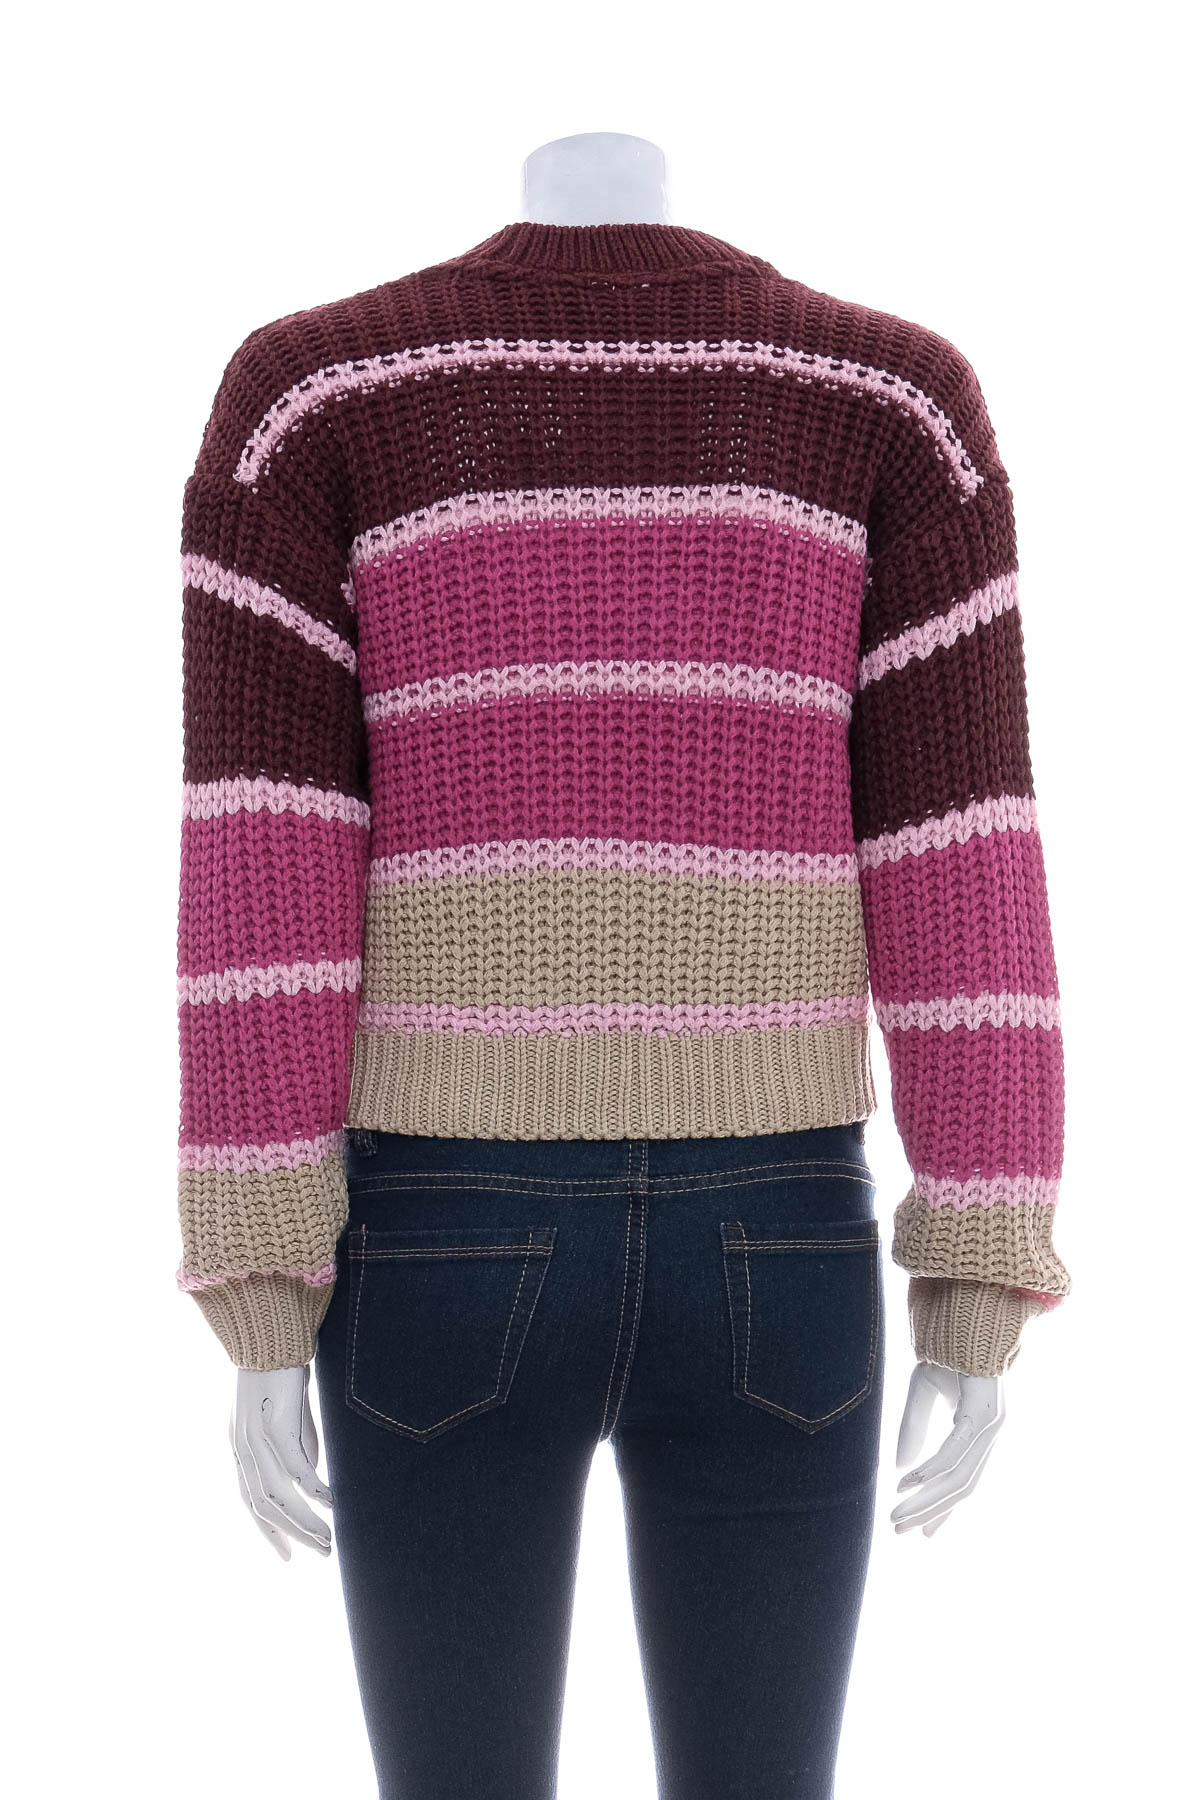 Women's sweater - NOISY MAY - 1